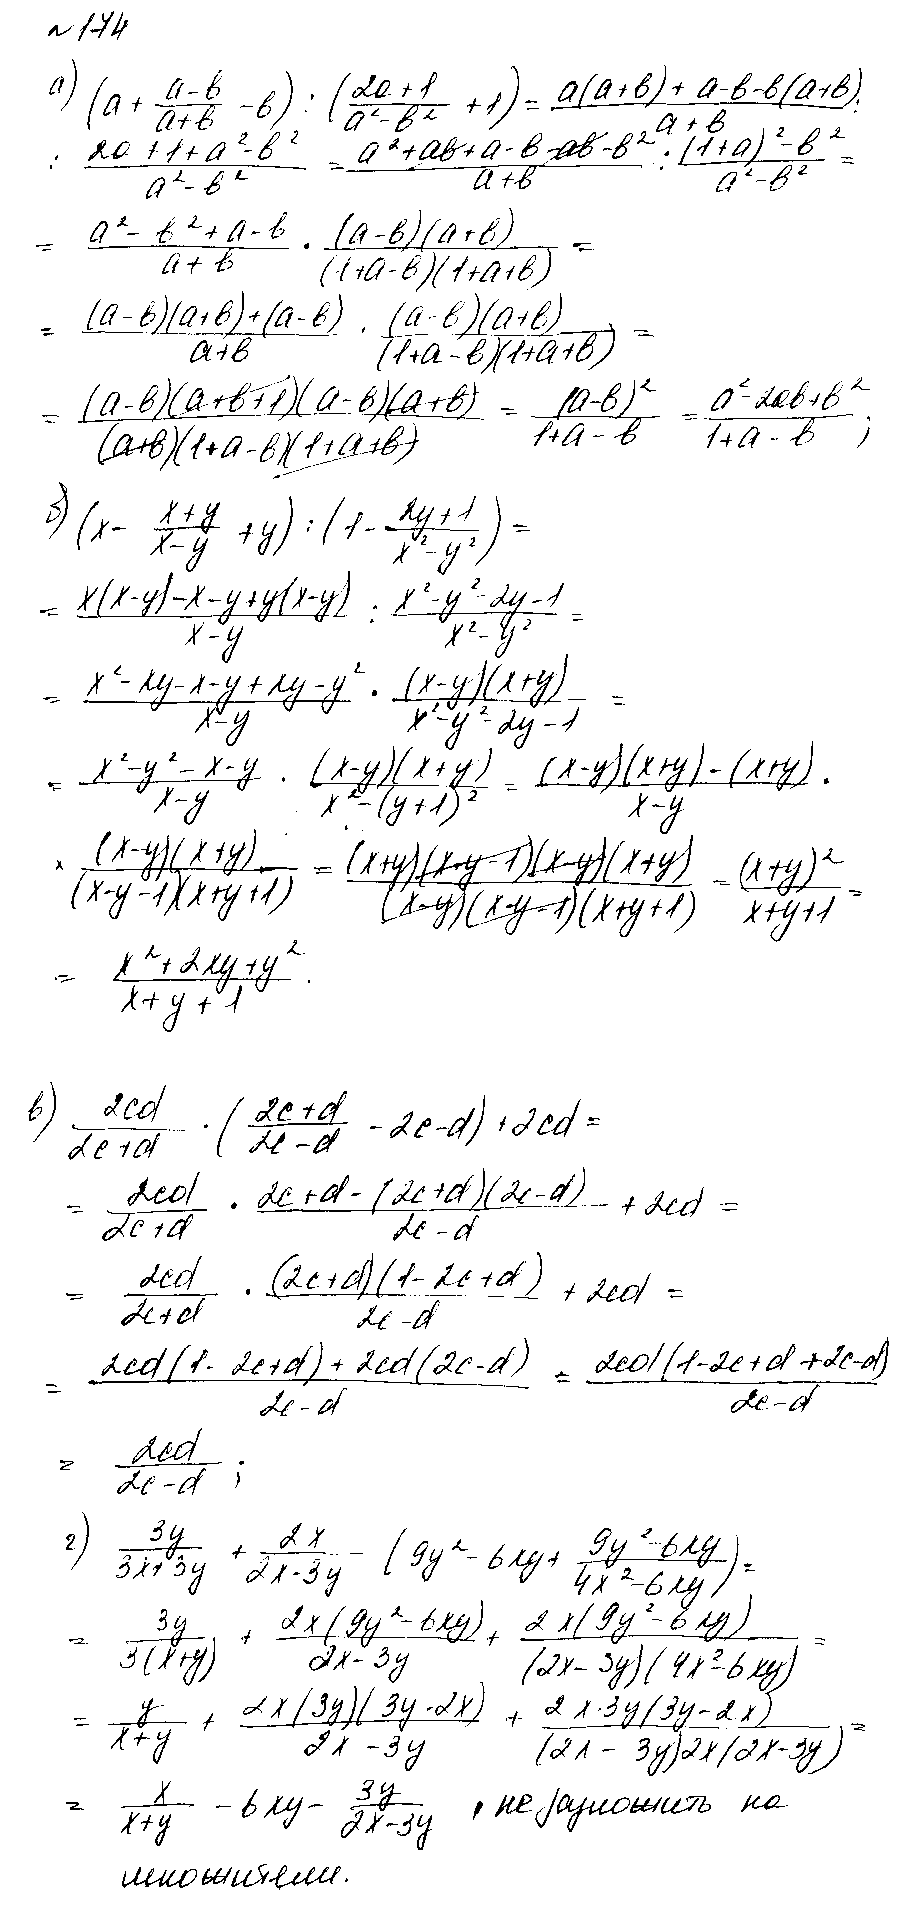 ГДЗ Алгебра 8 класс - 174